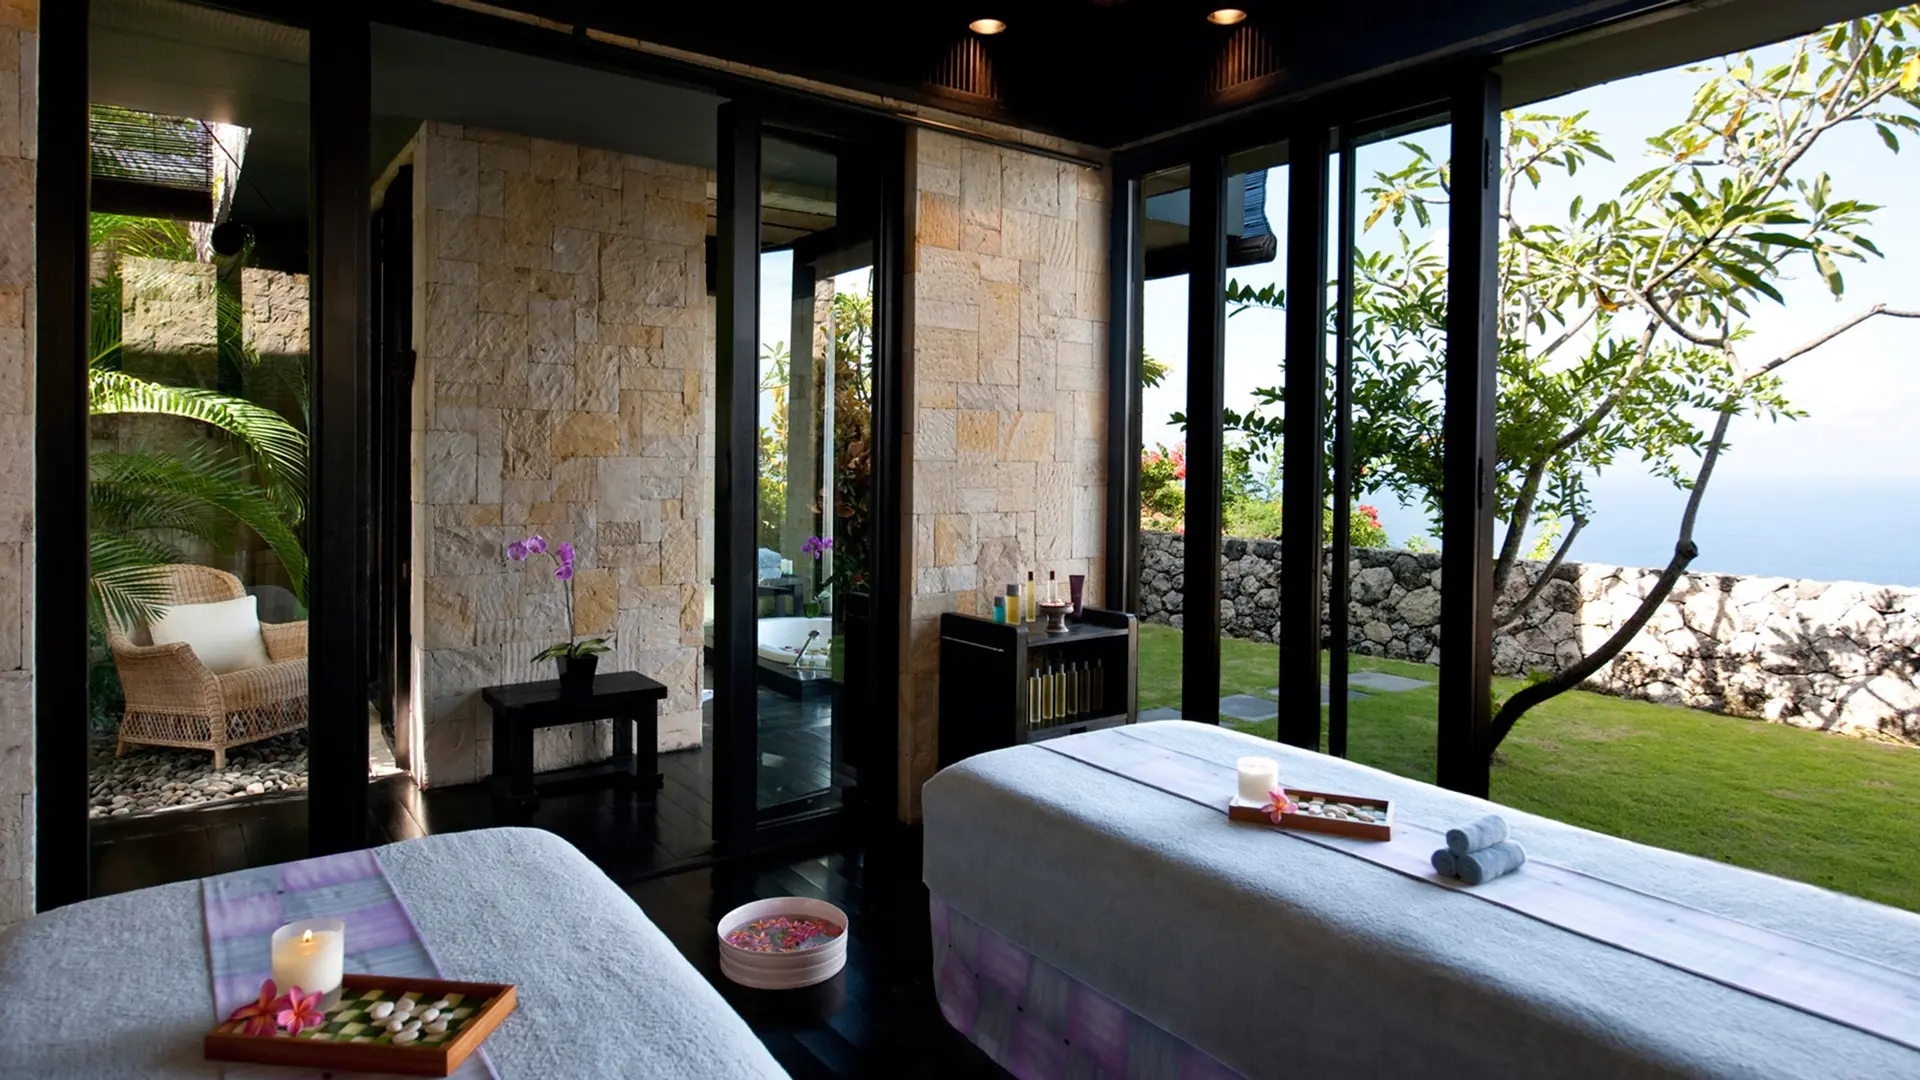 Hotel review Service & Facilities' - Bulgari Resort Bali - 5